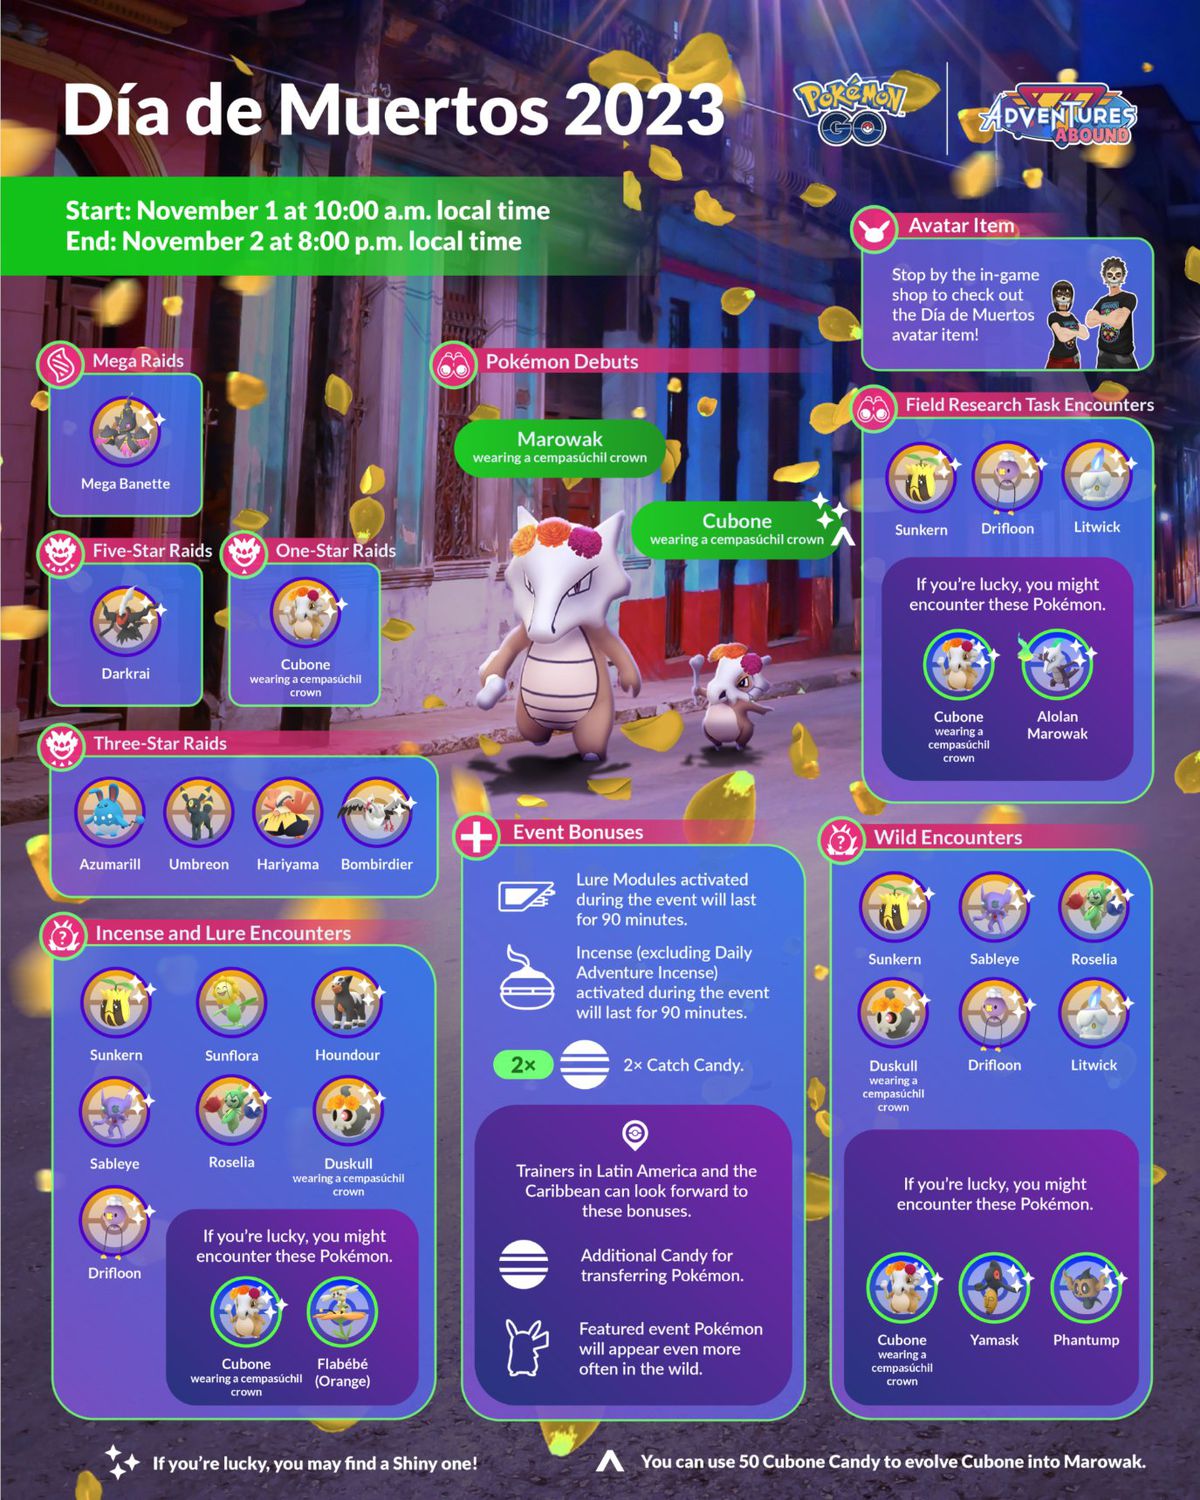 An infographic for Pokémon Go’s Dia de Muertos 2023 event, showing Marowak and Cubone wearing a cempasúchil crown.